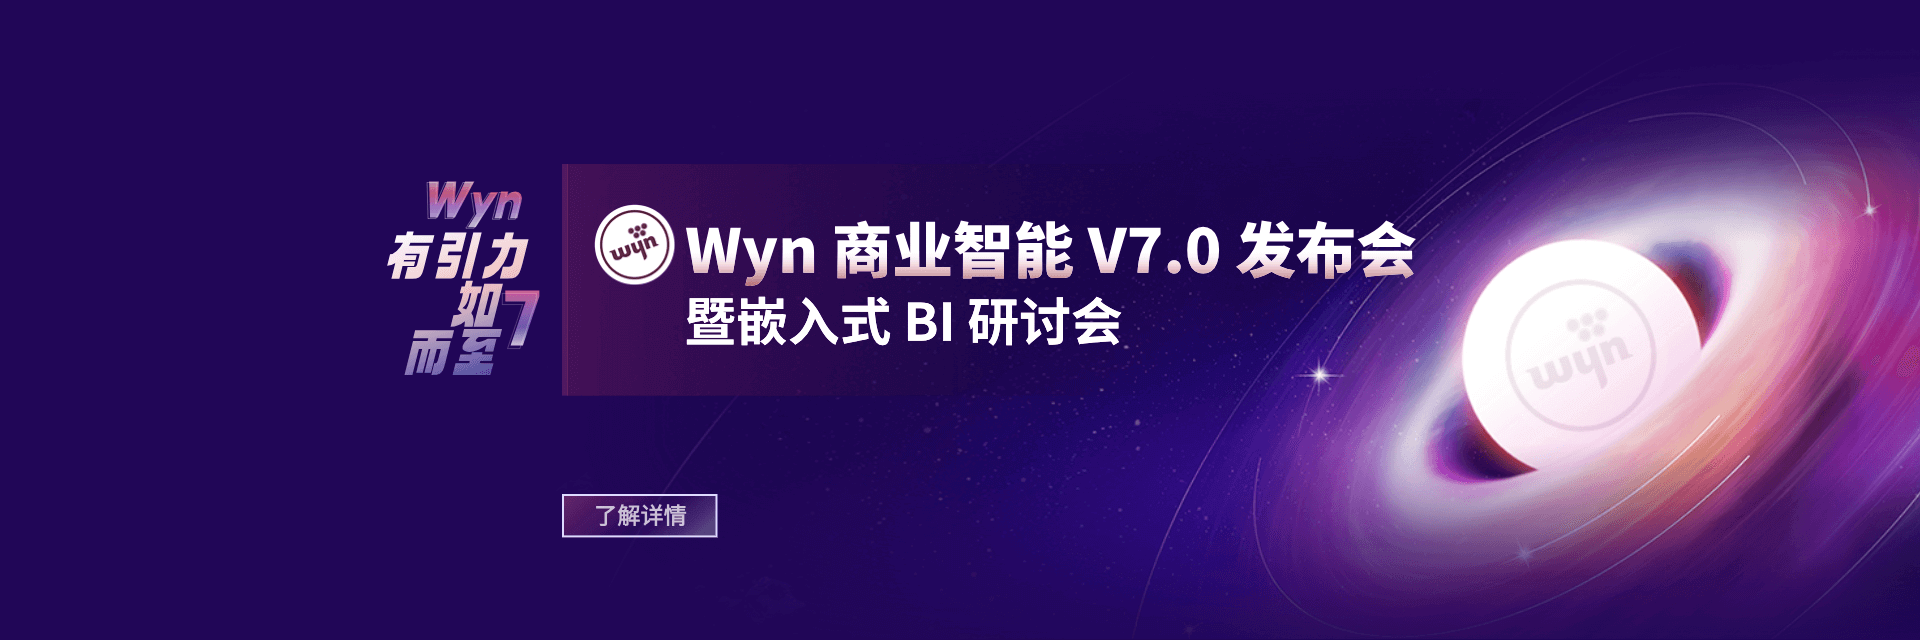 Wyn商业智能V7.0发布会暨嵌入式BI研讨会